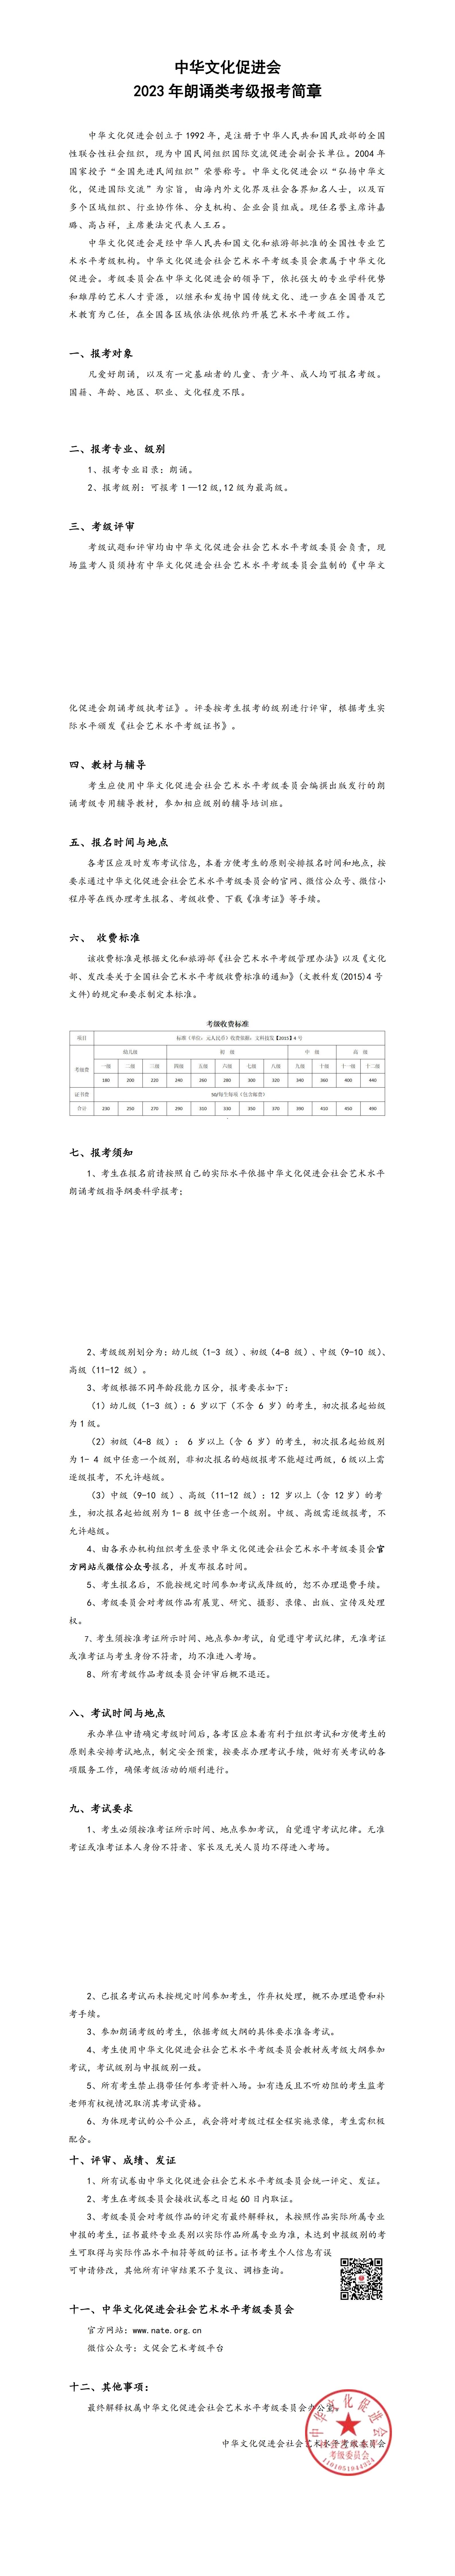 2023年中华文化促进会朗诵类考级简章_00.jpg